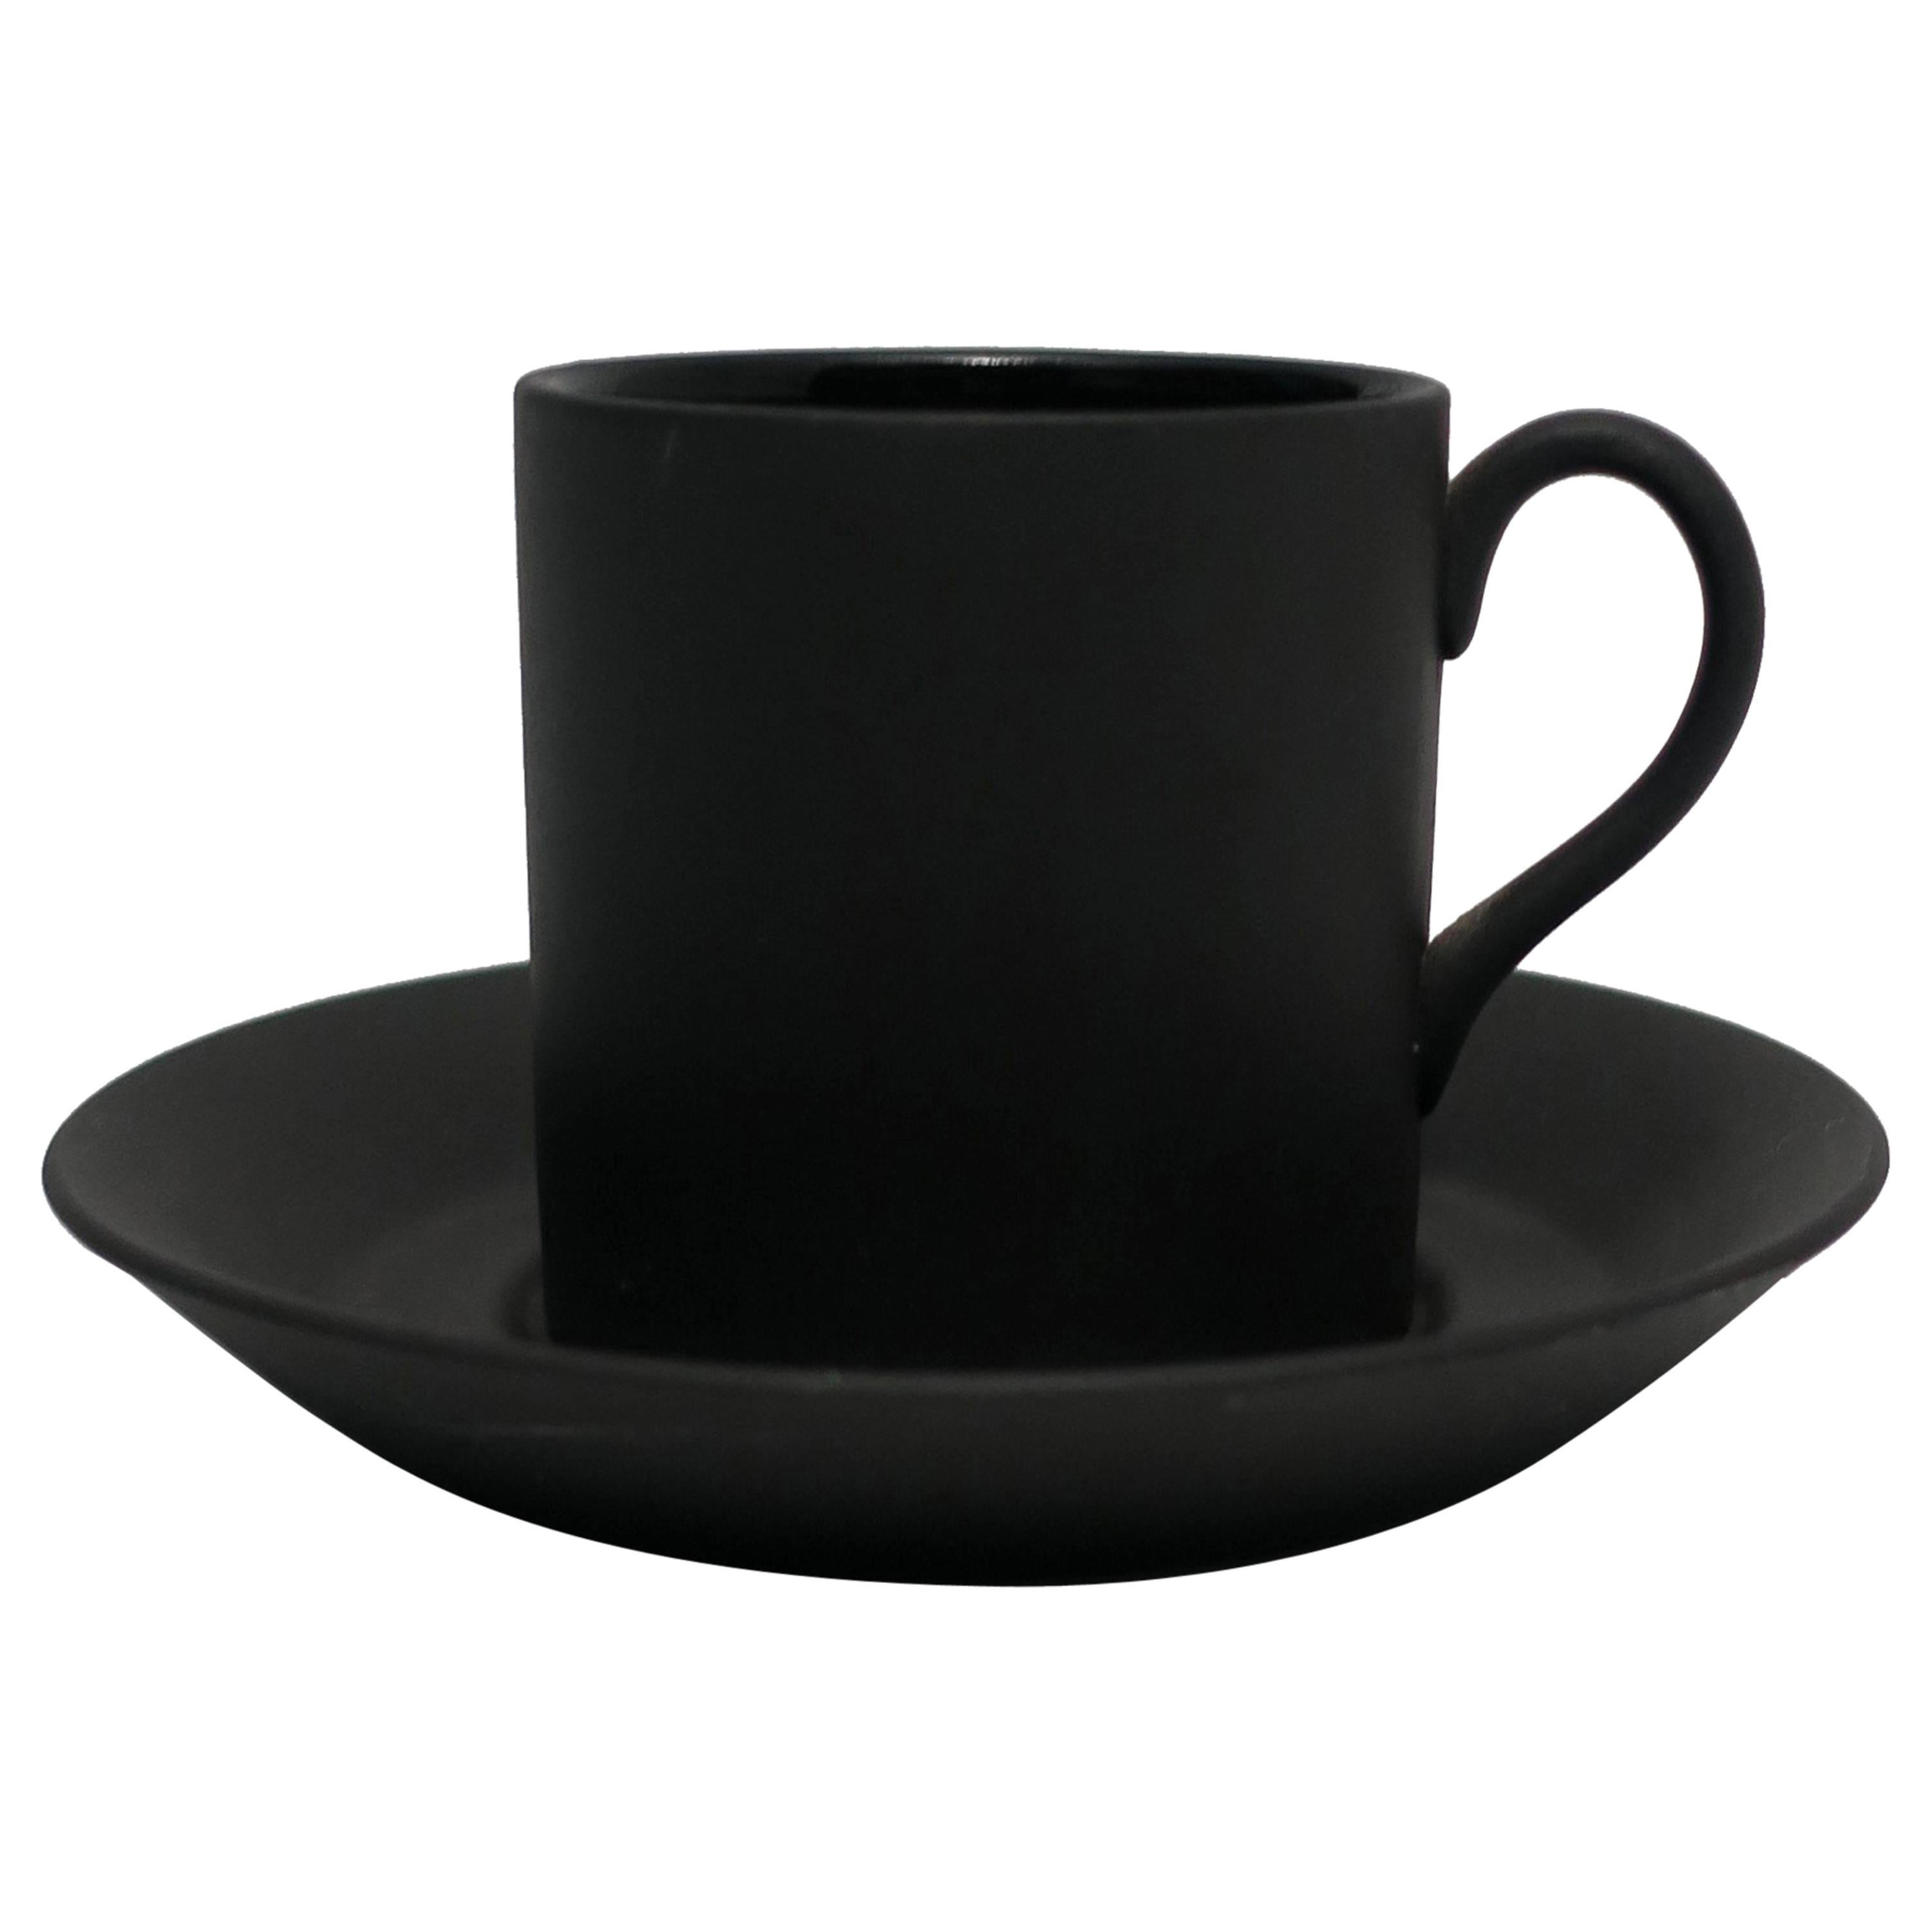 Matte Black Espresso Cup and Saucer, England